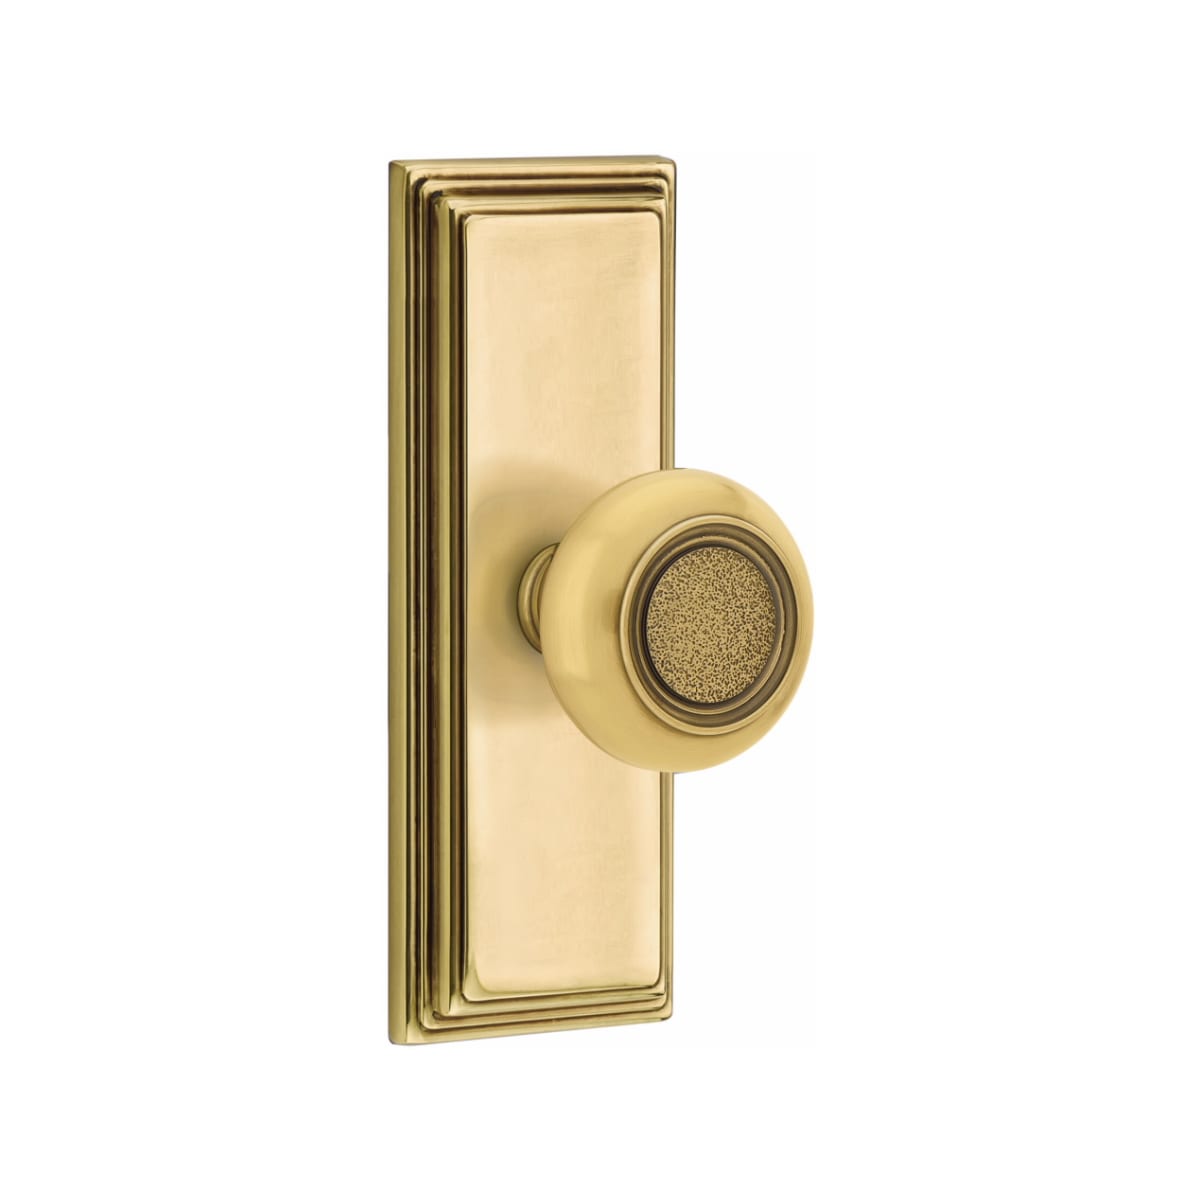 Mortice Bathroom Door Lock - Brass Finish - Internal Doors™